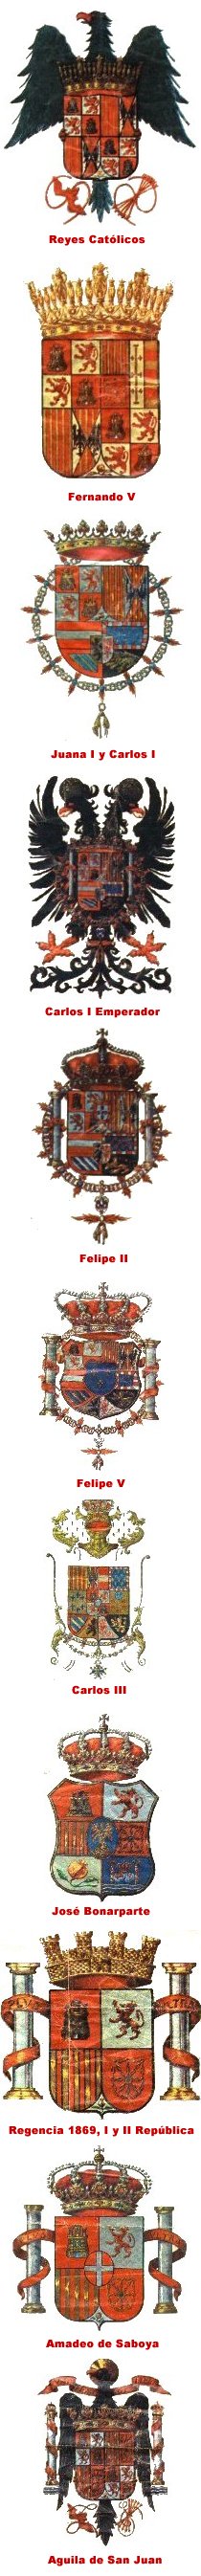 Escudos de Espana